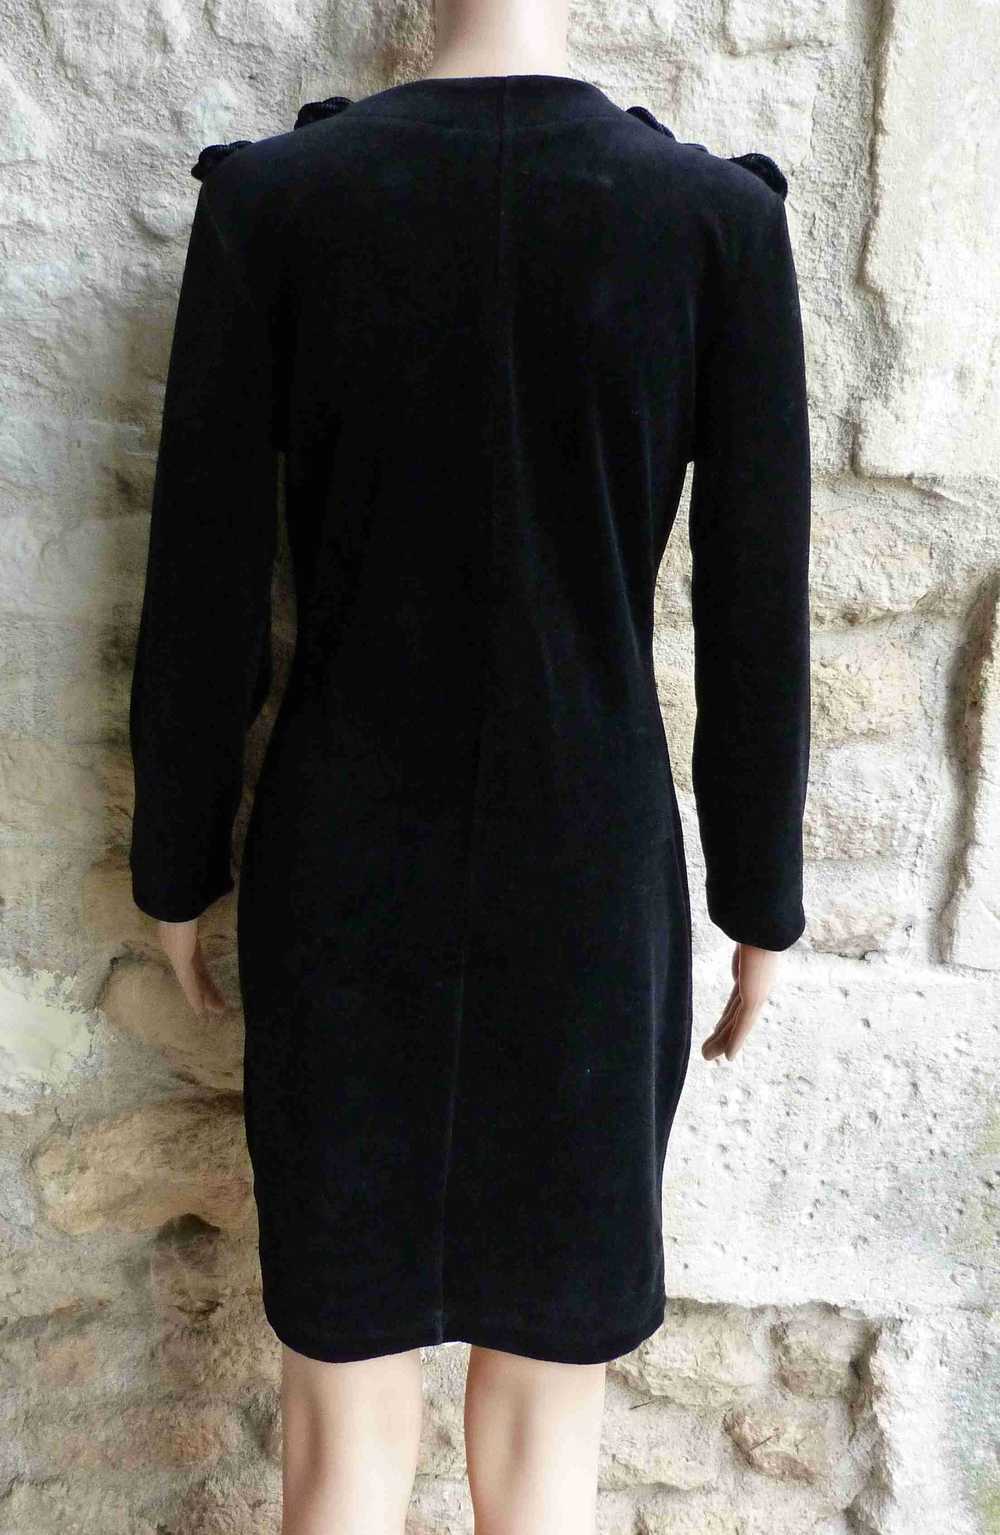 Yves Saint Laurent dress - mid-length velvet dres… - image 6